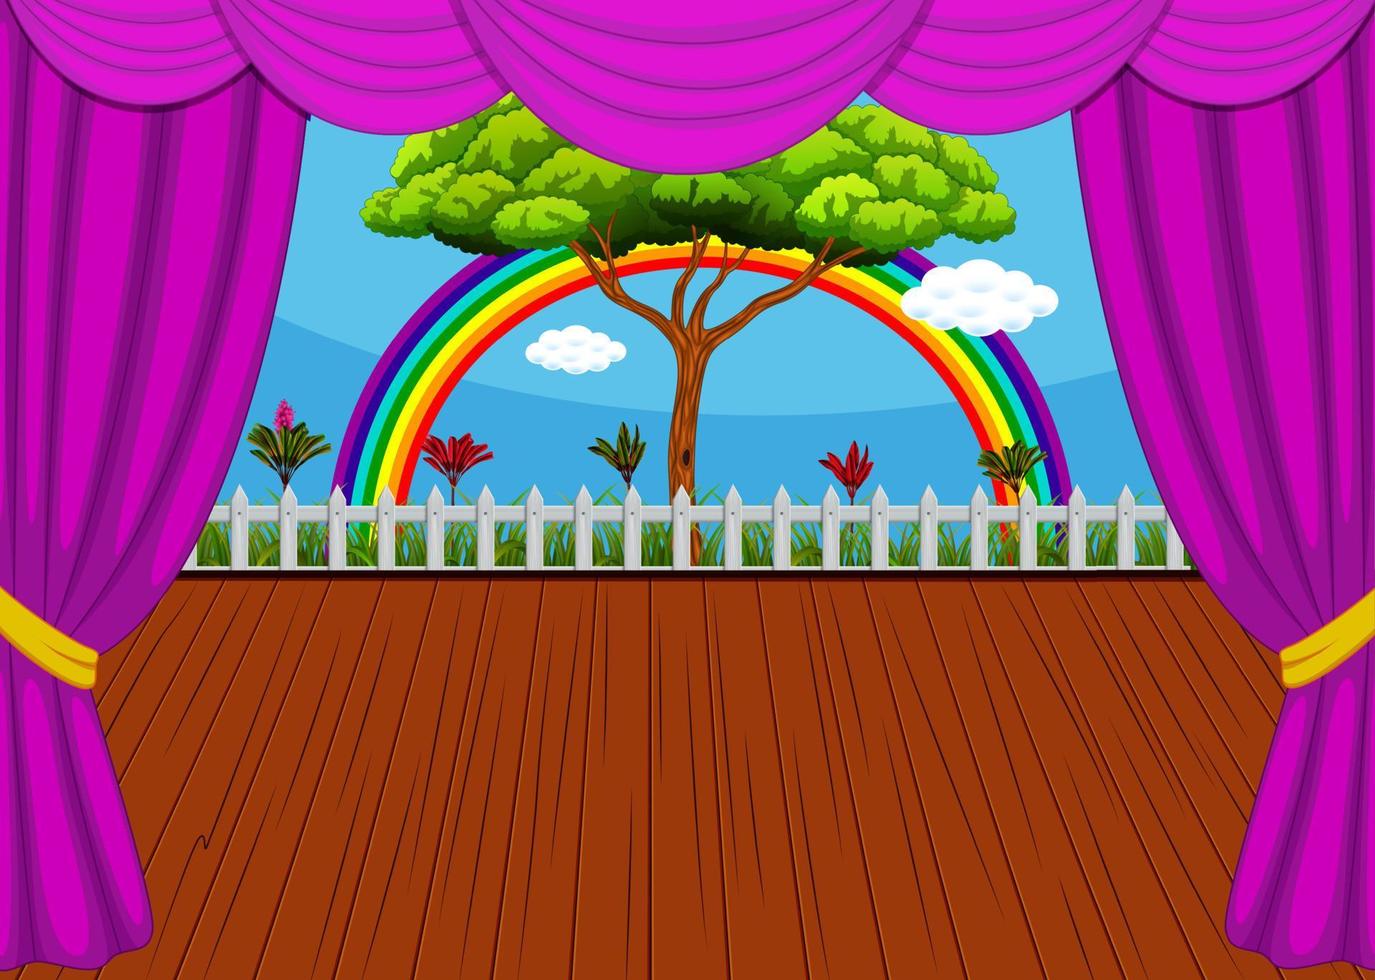 de stadium met regenboog en boom achtergrond vector